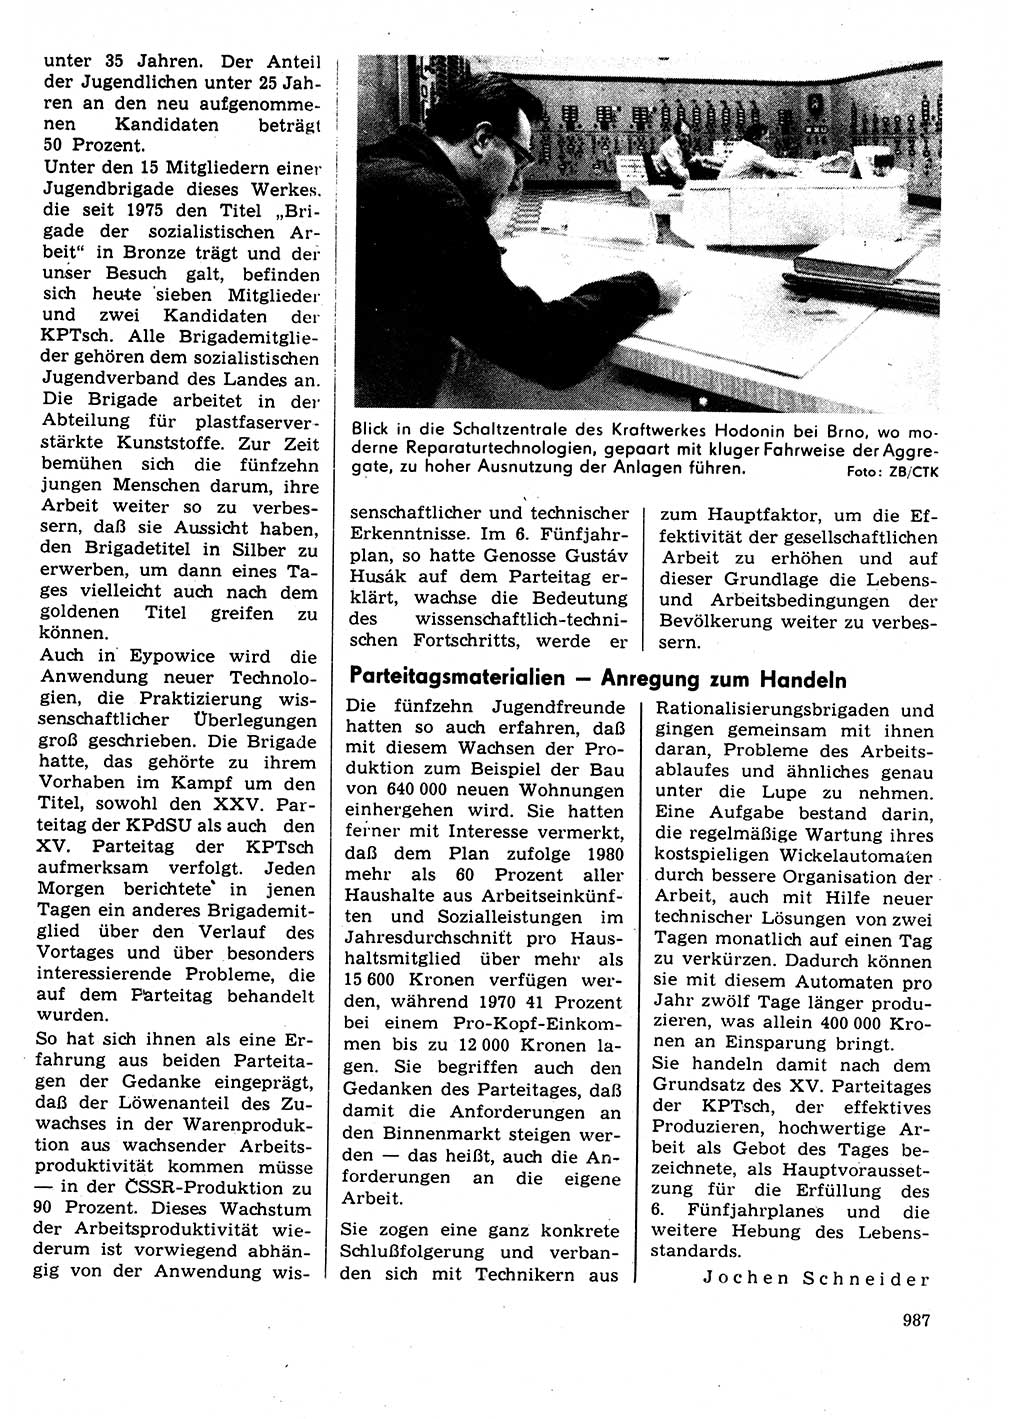 Neuer Weg (NW), Organ des Zentralkomitees (ZK) der SED (Sozialistische Einheitspartei Deutschlands) für Fragen des Parteilebens, 31. Jahrgang [Deutsche Demokratische Republik (DDR)] 1976, Seite 987 (NW ZK SED DDR 1976, S. 987)